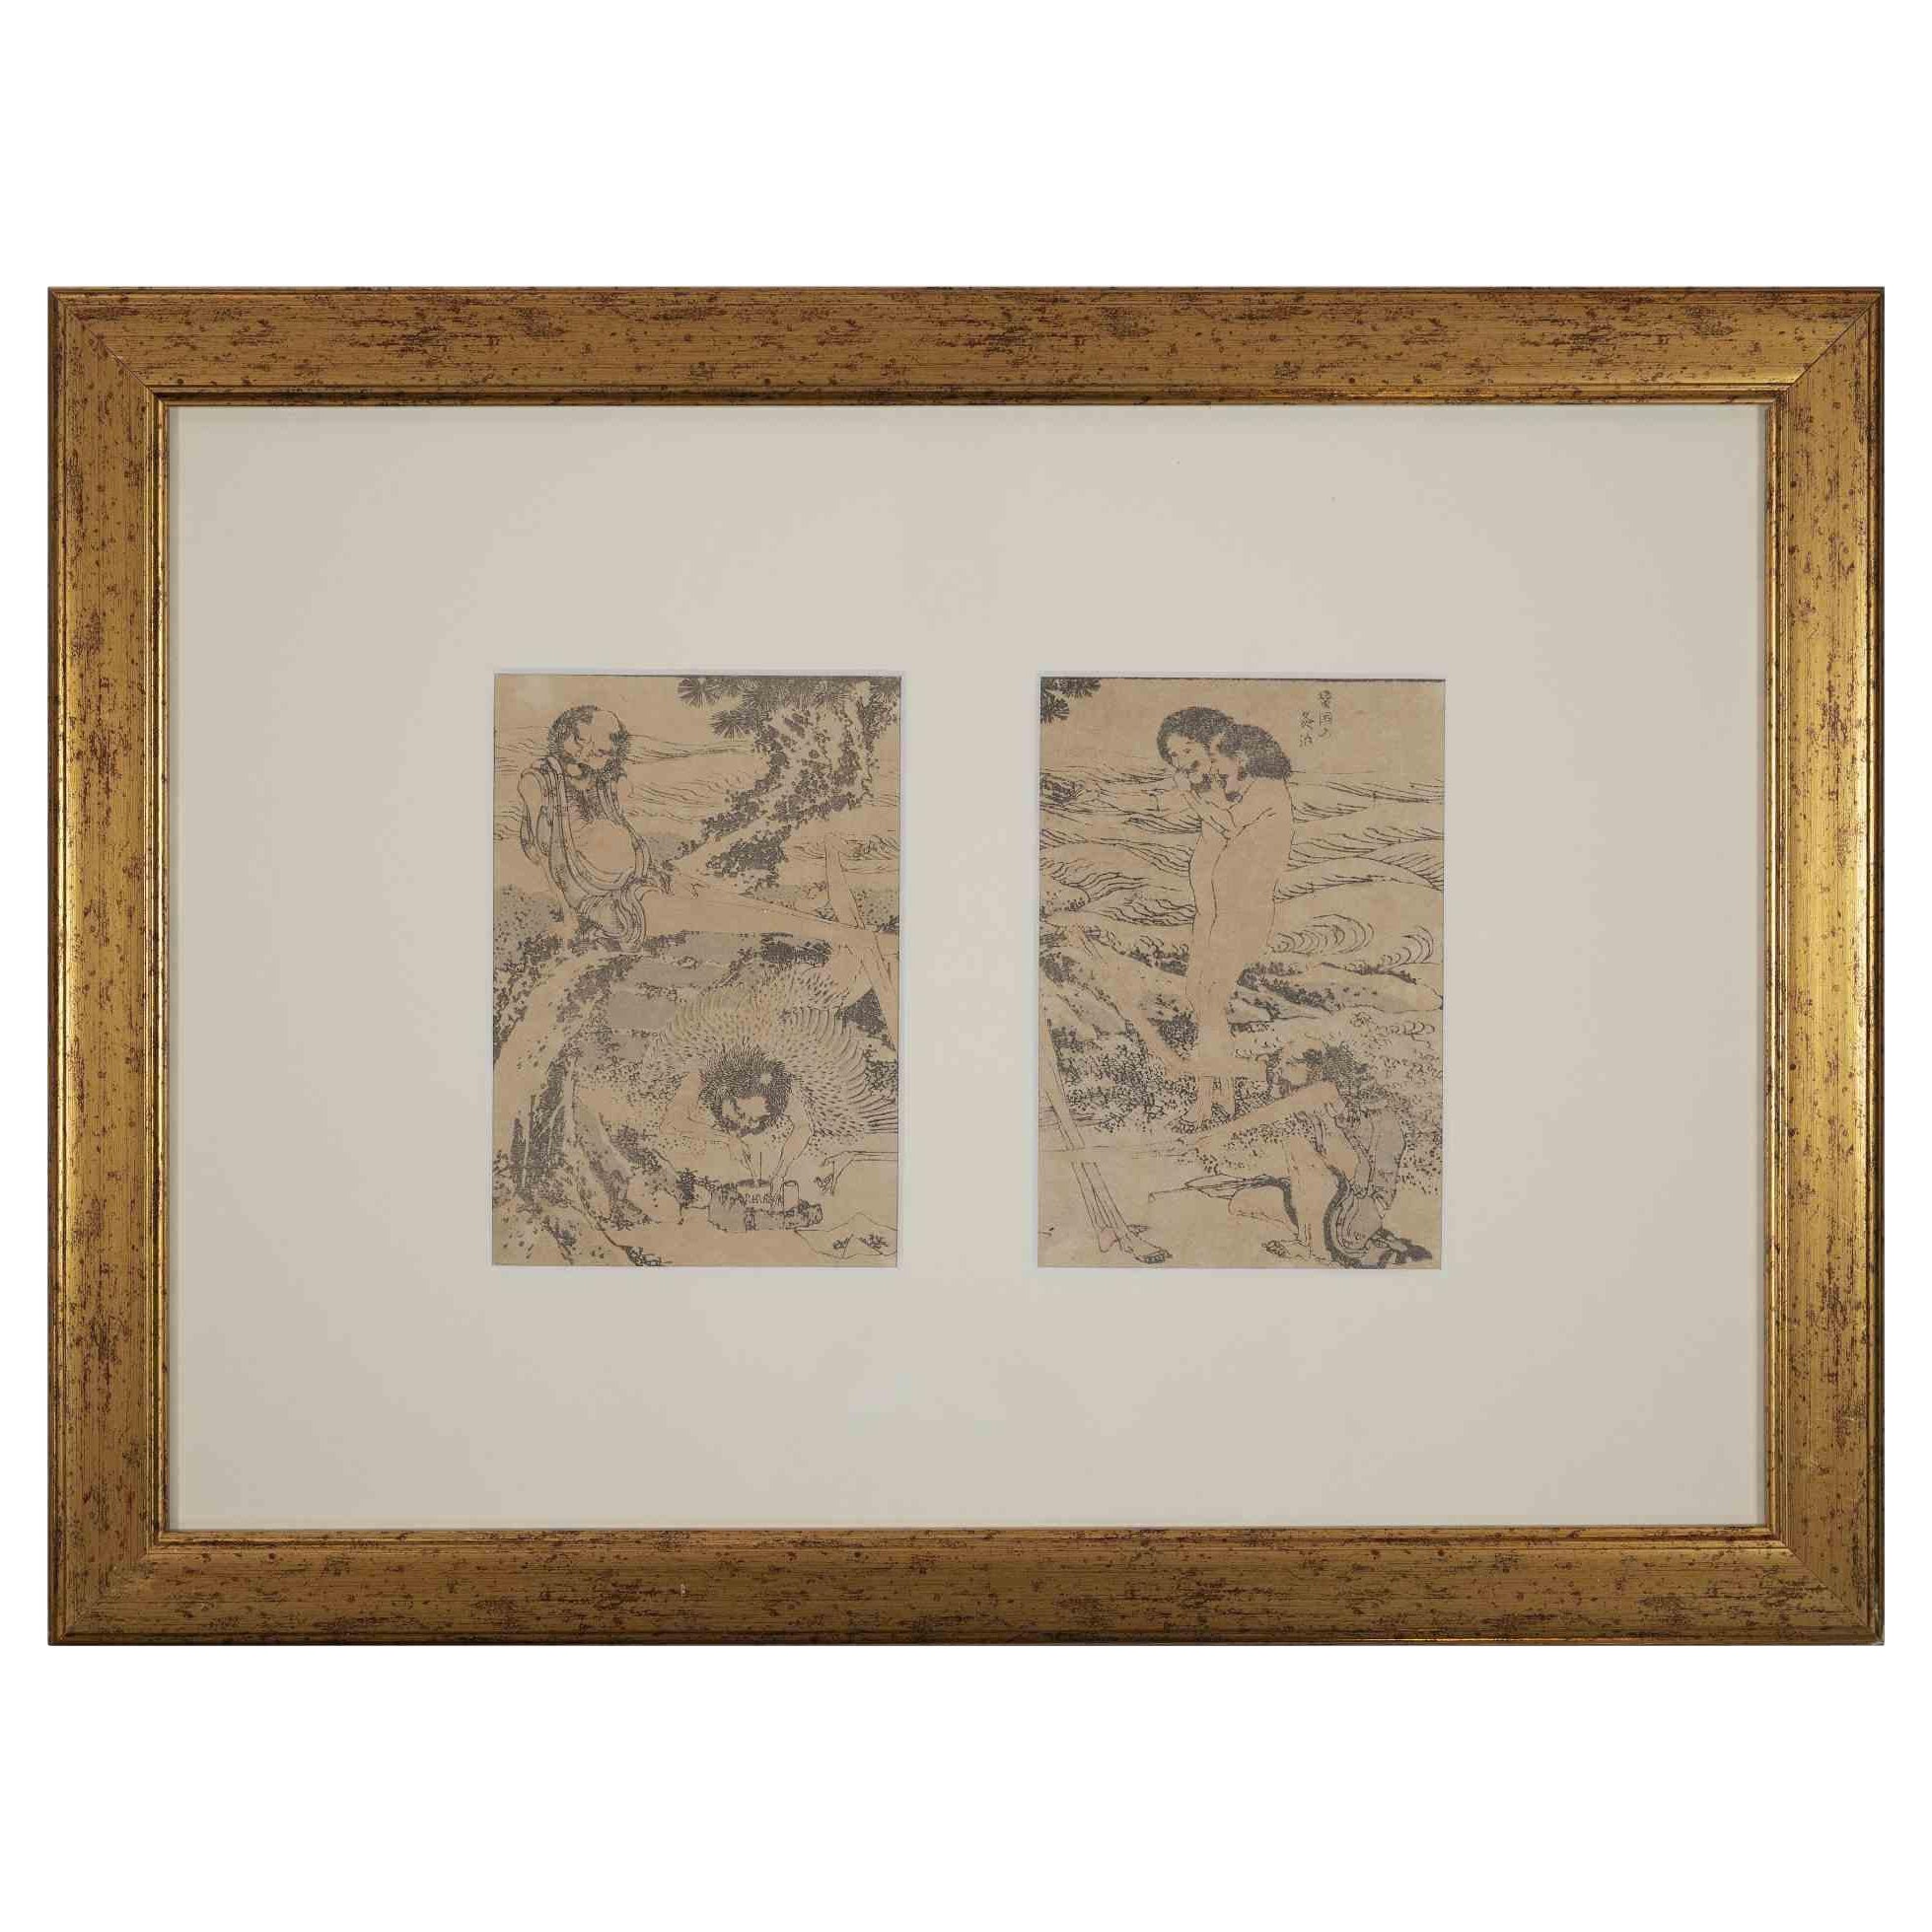 Les figures orientales sont une œuvre d'art moderne originale réalisée d'après Katsushika Hokusai à la fin du XIXe siècle.

Gravure sur bois en noir et blanc.

Comprend un cadre doré.